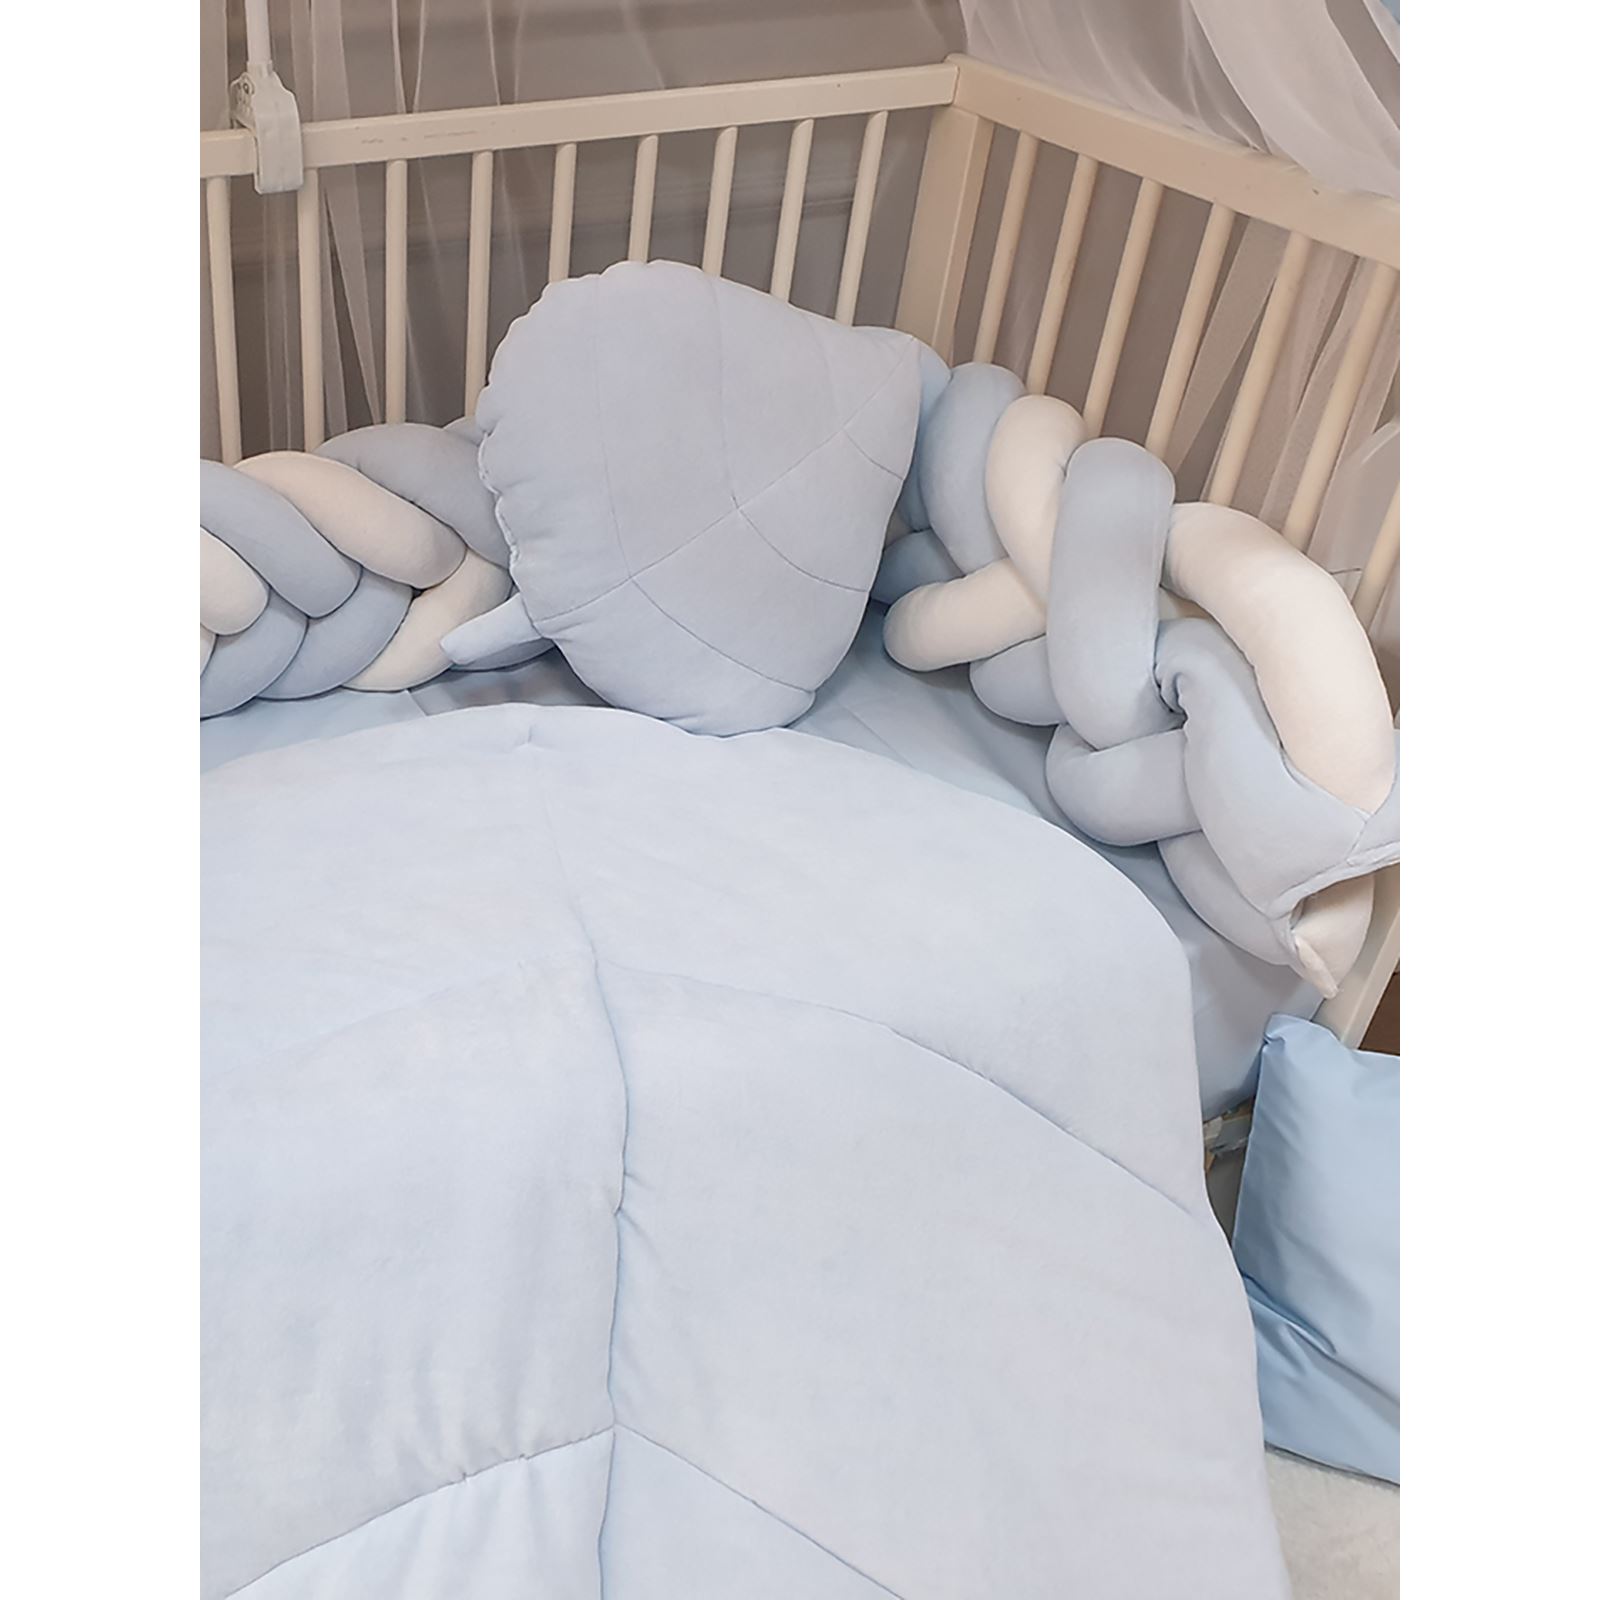 Yuar Baby Kadife 5 li Mısır Örgü Beşik Uyku Seti Mavi 70x130 cm